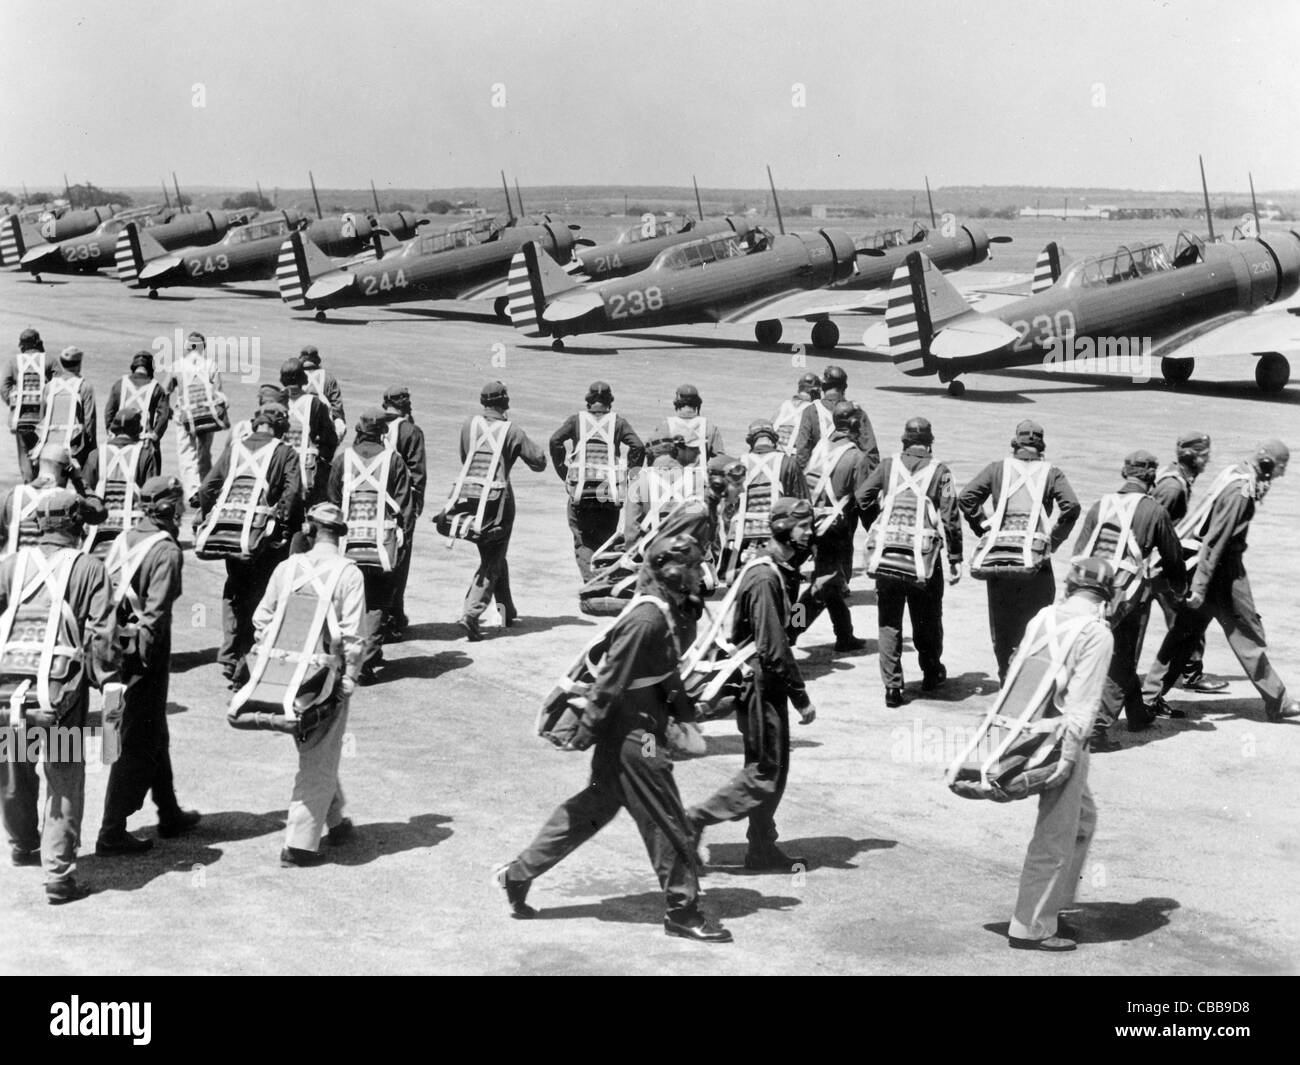 Les pilotes stagiaires en hâte à leur avion avant un vol. USA WW11. Banque D'Images